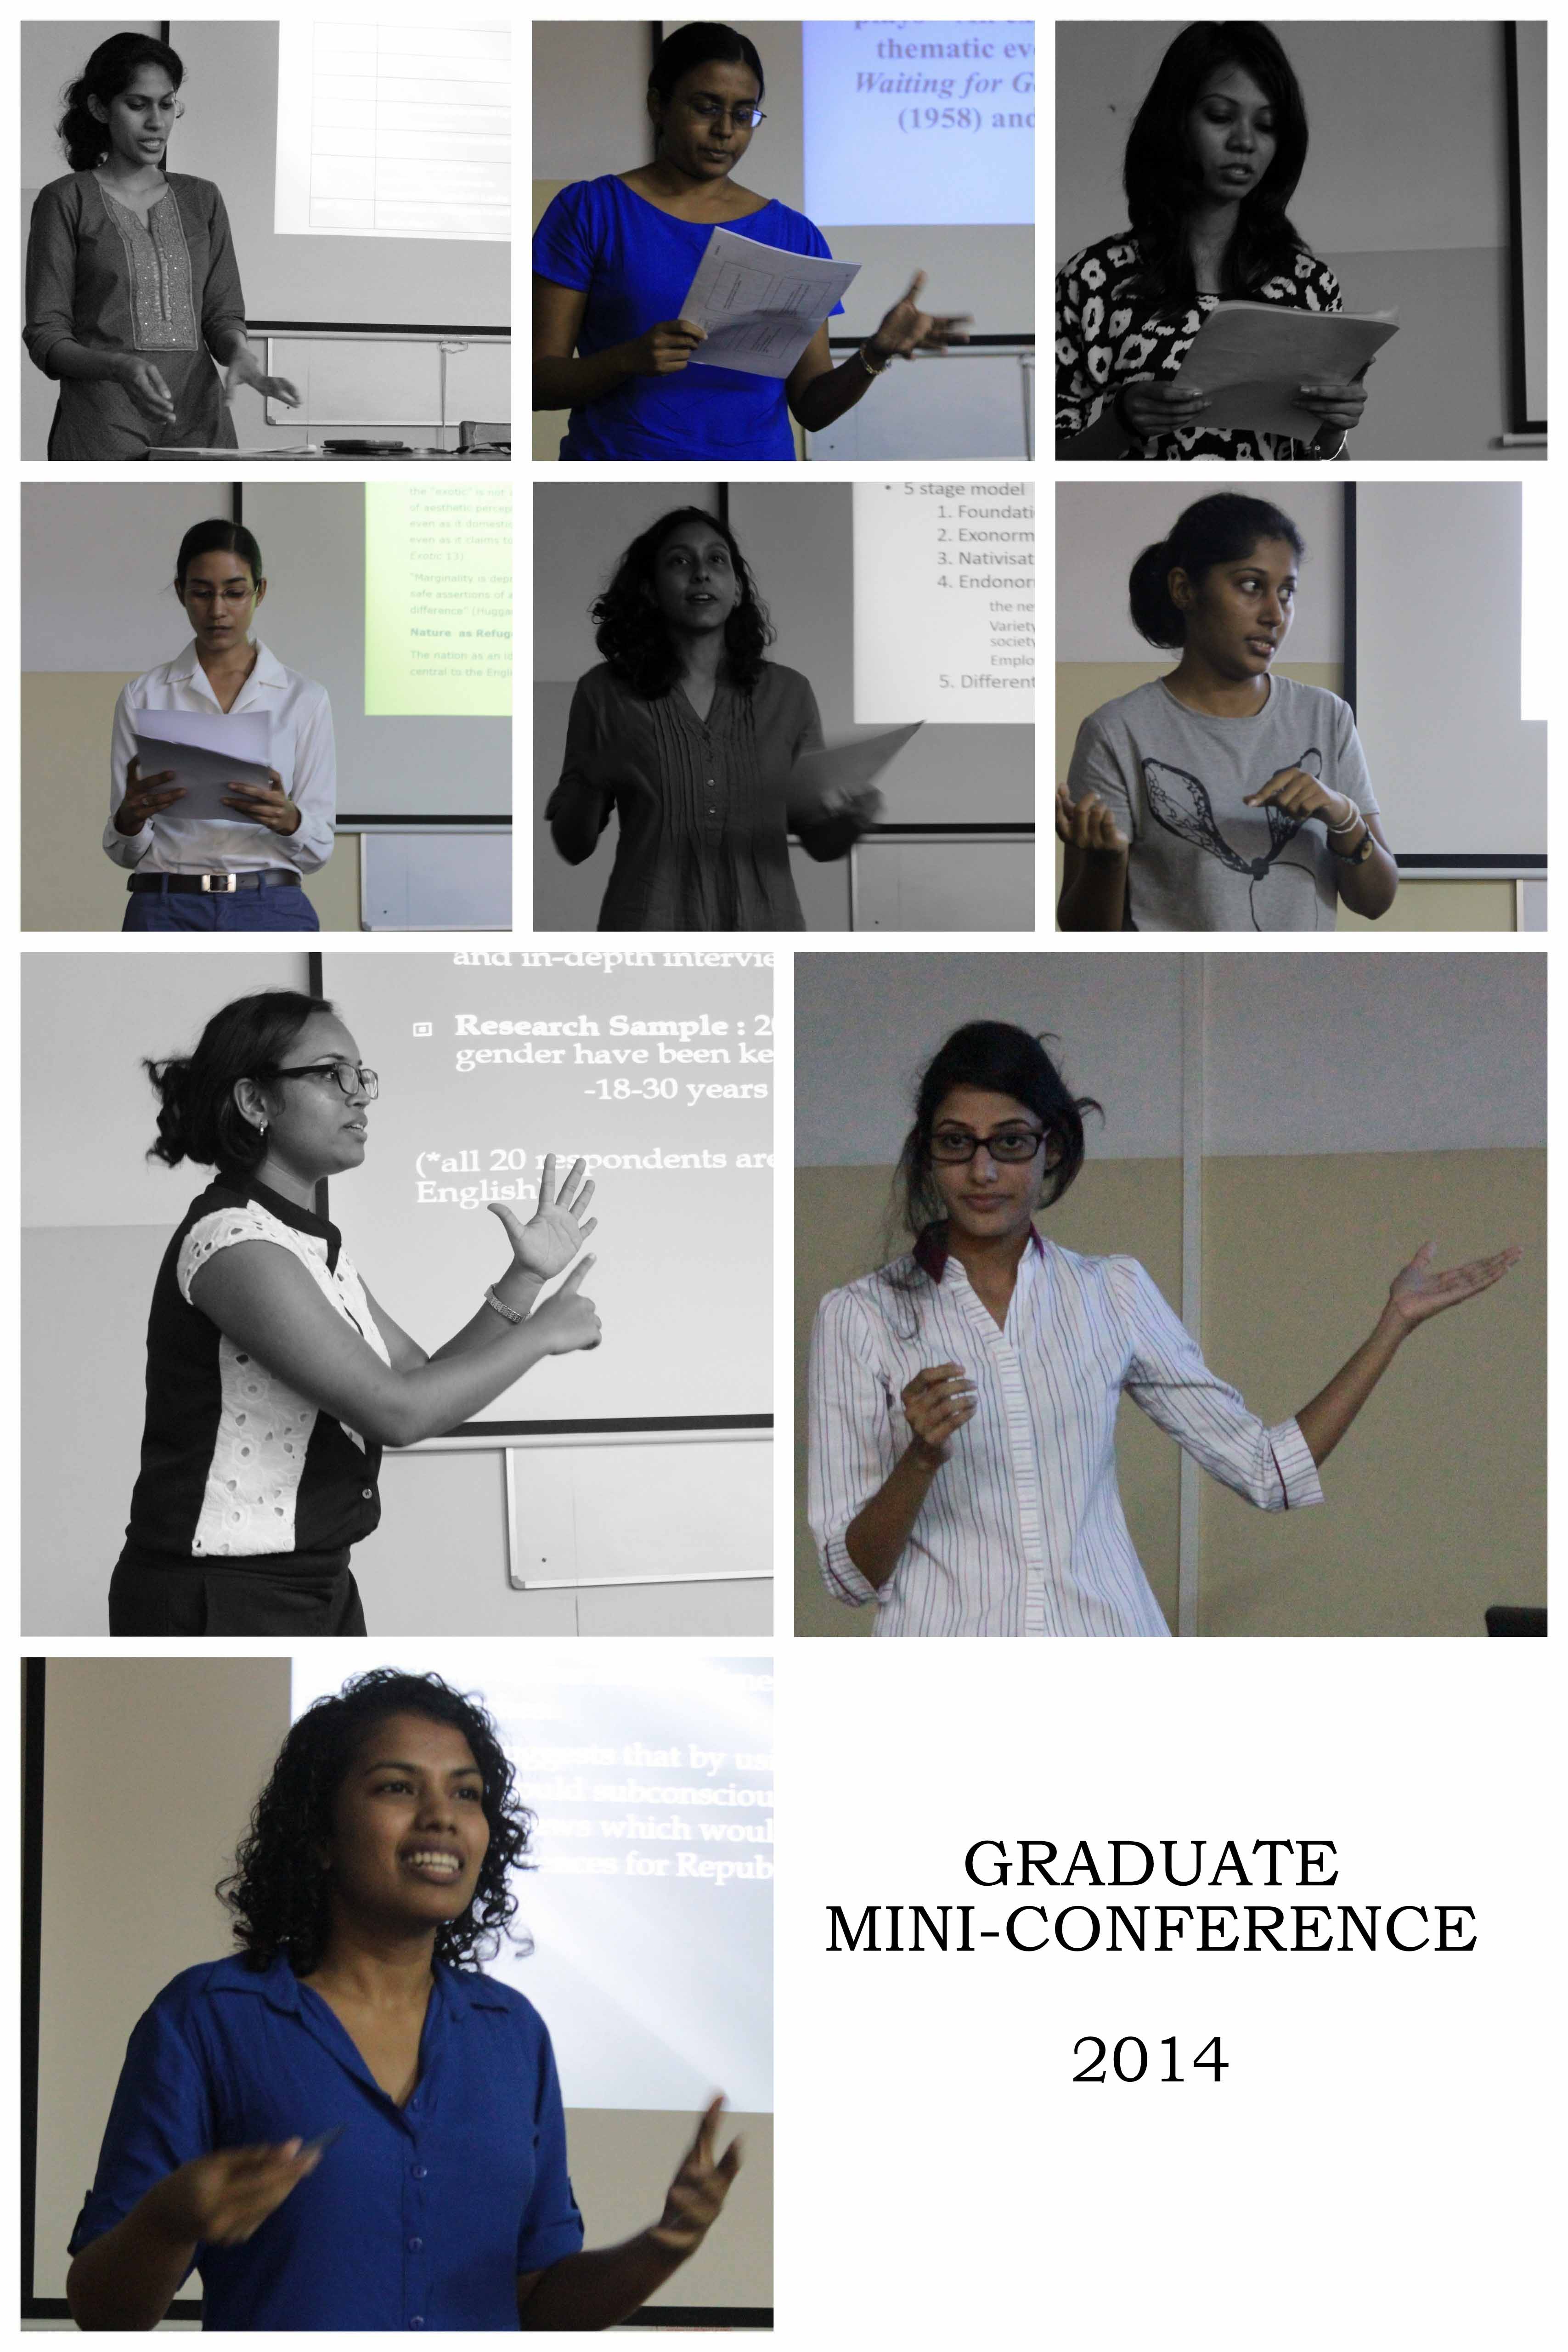 Graduate Mini-Conference – 2014